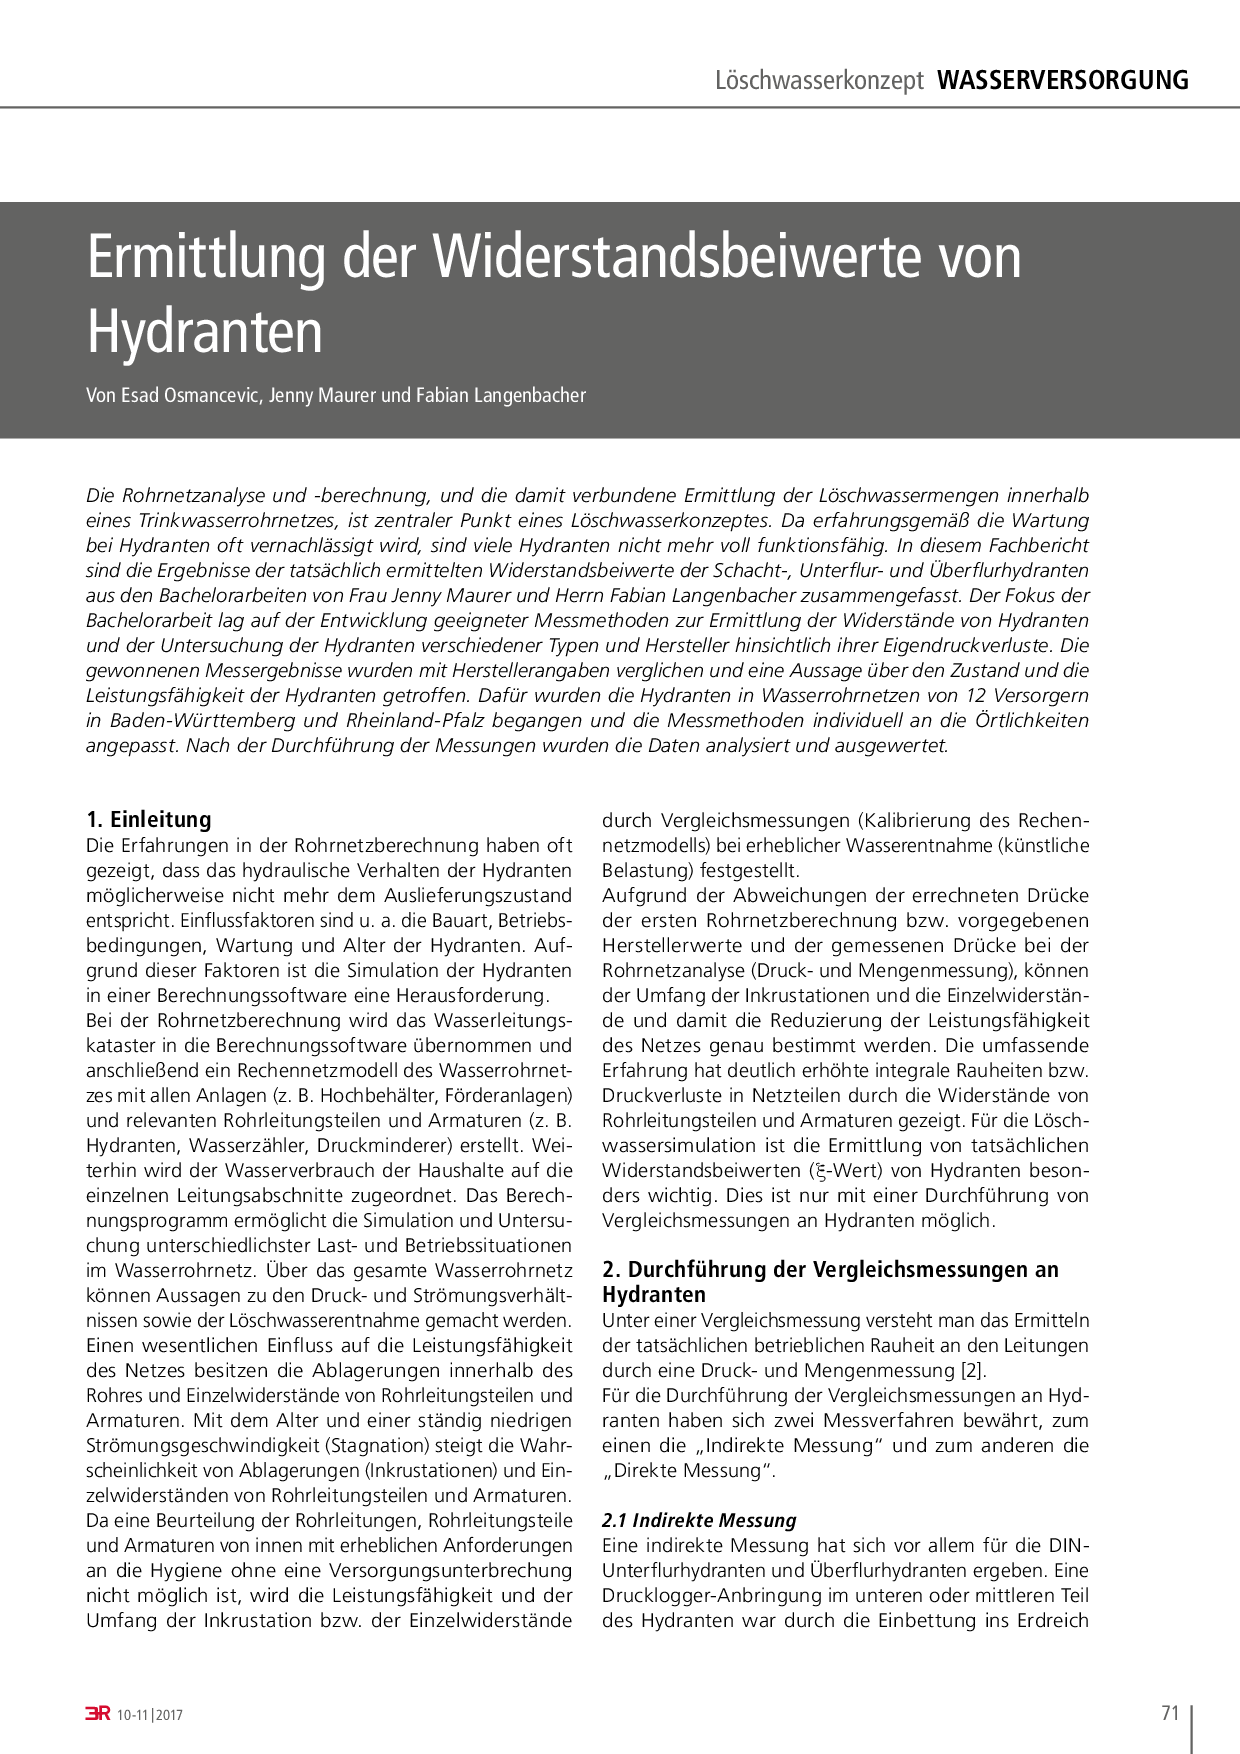 Ermittlung der Widerstandsbeiwerte von Hydranten